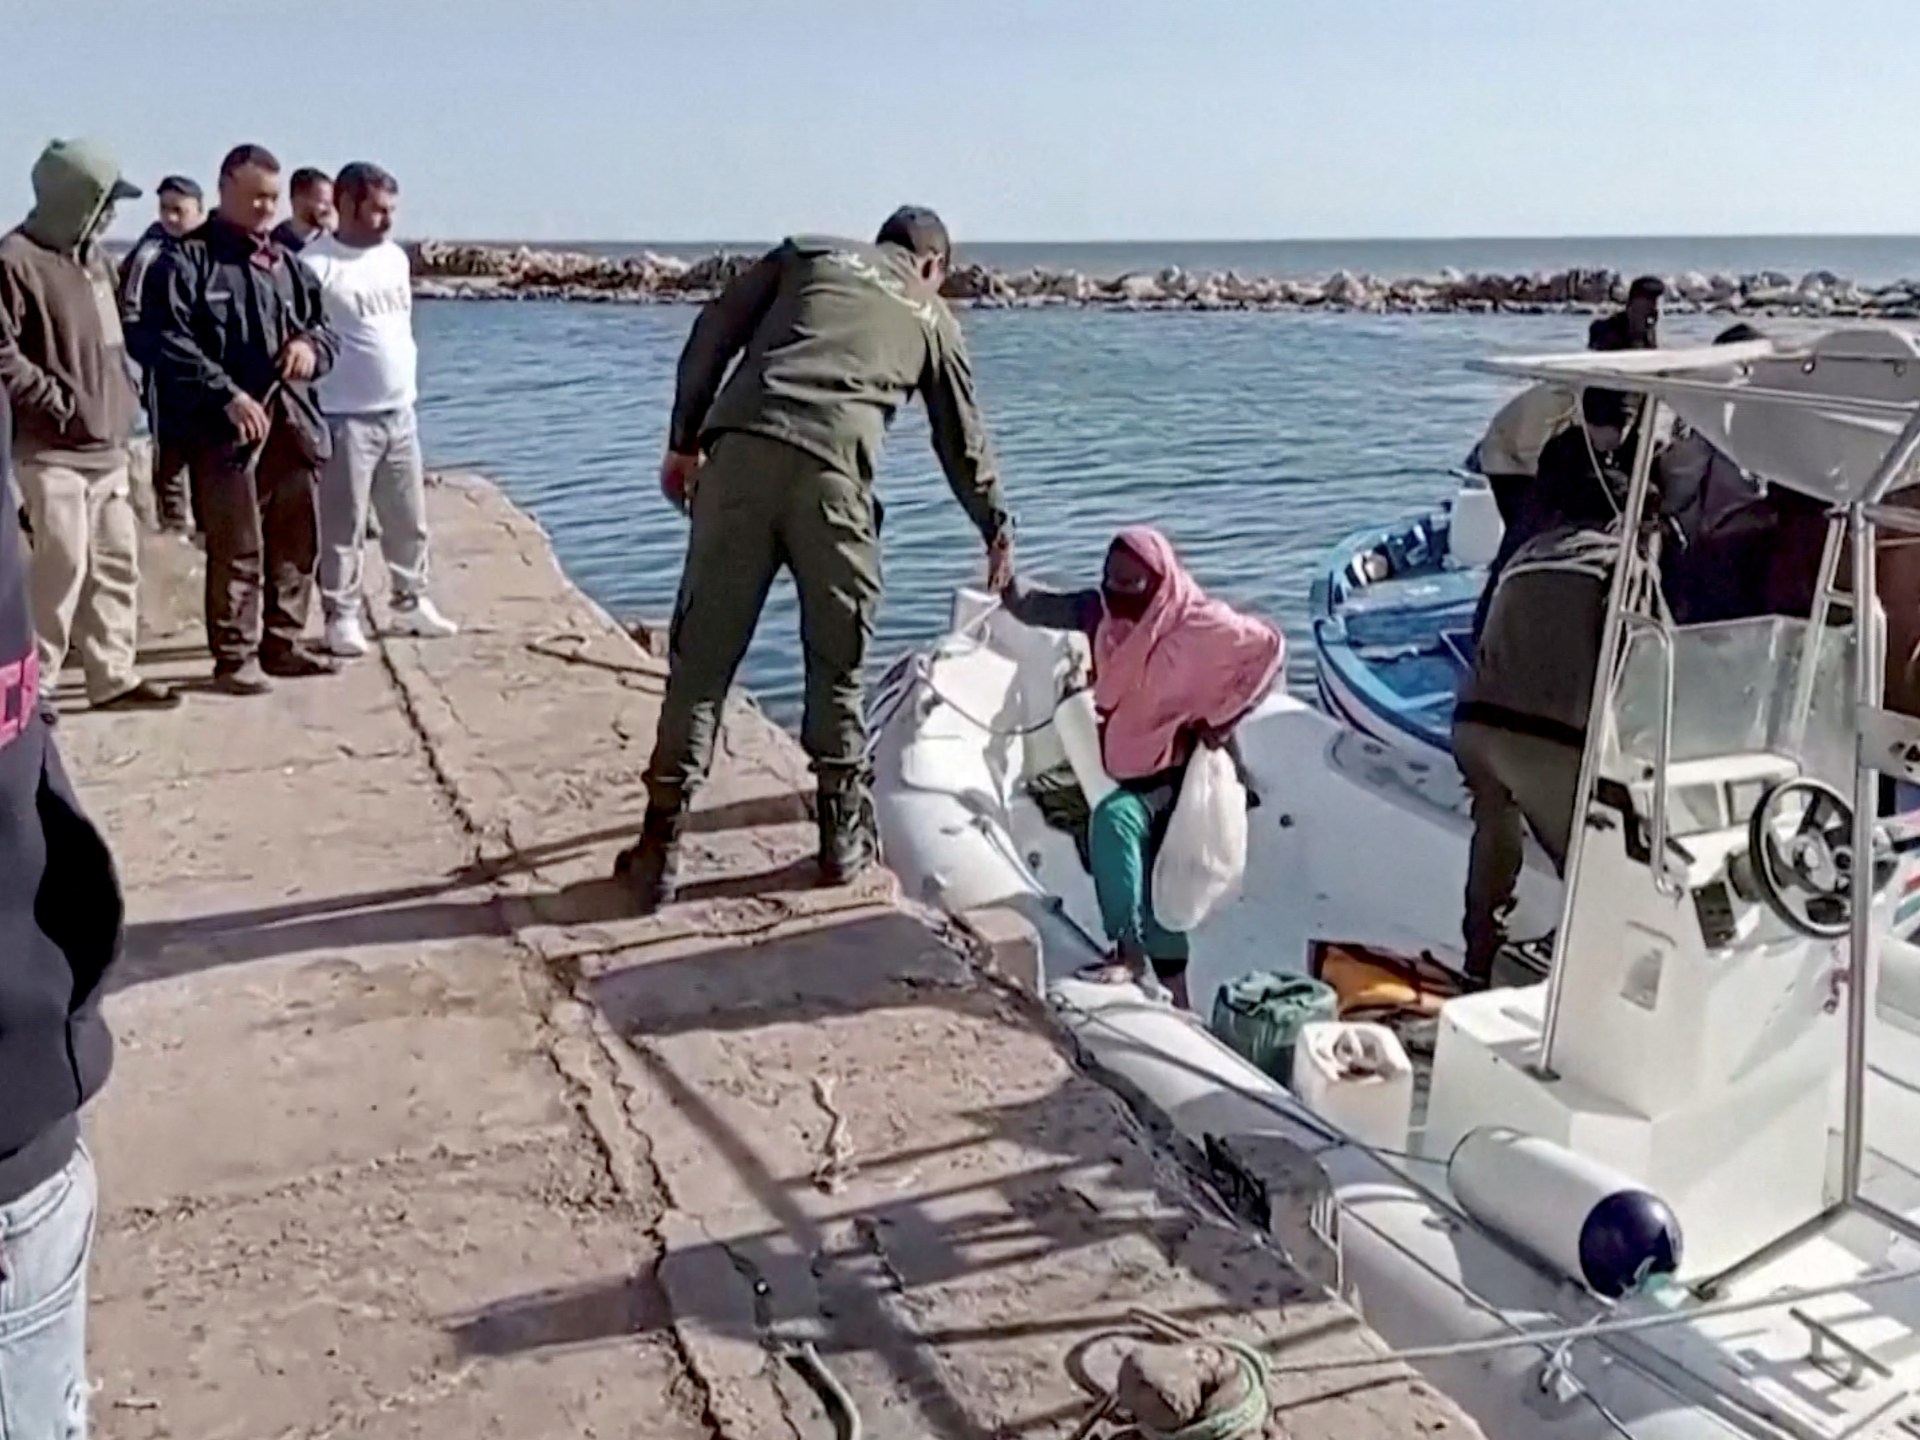 Lebih dari 900 orang tenggelam di Tunisia tahun ini: Menteri Dalam Negeri |  Berita Migrasi